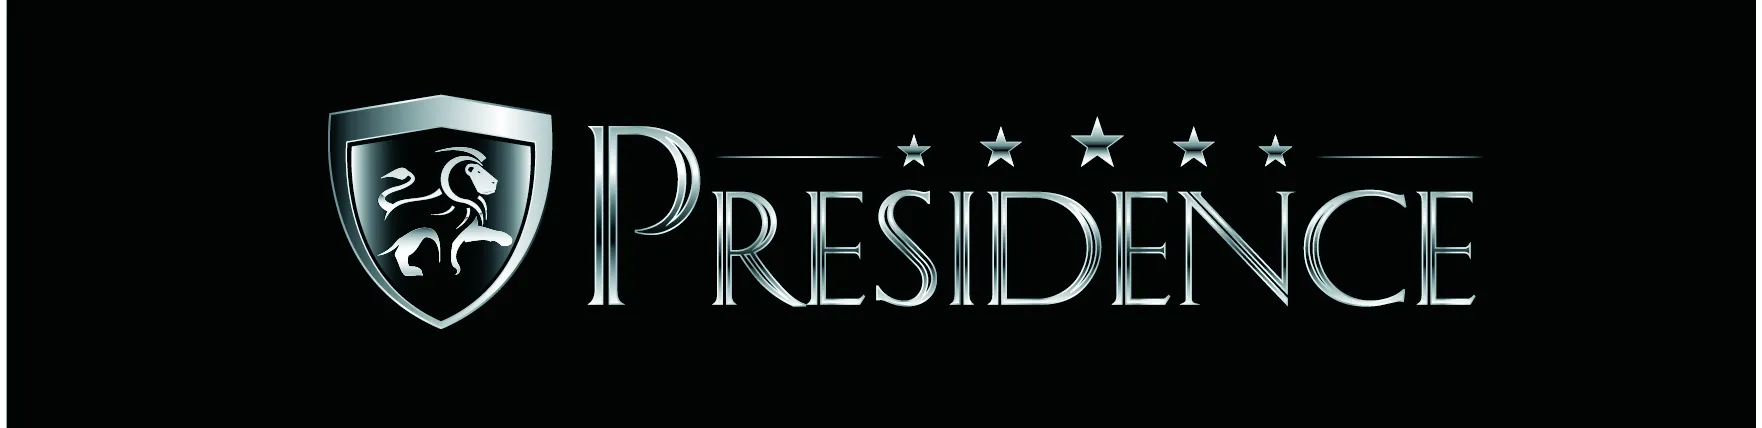 Logo Presidence